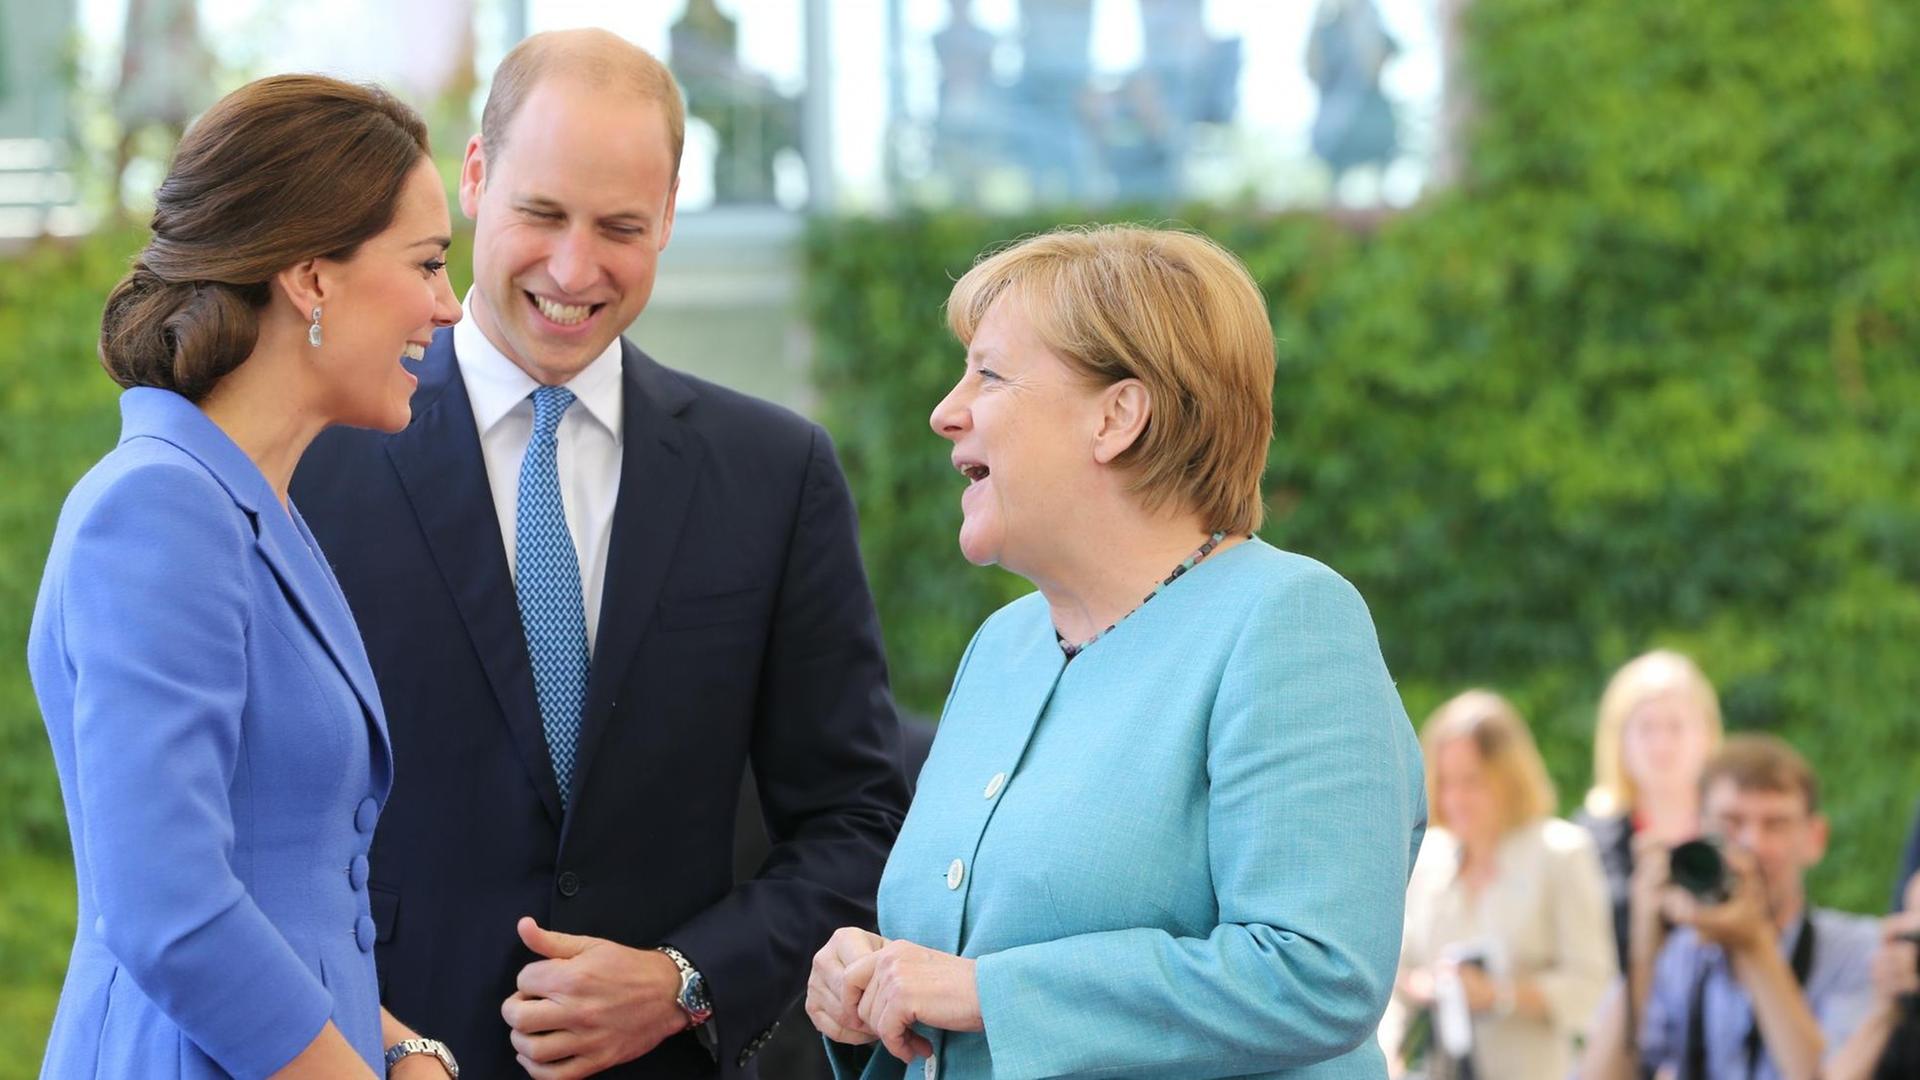 Bundeskanzlerin Angela Merkel (CDU) empfängt den britischen Prinzen William und seine Frau Herzogin Kate am 19.07.2017 im Bundeskanzleramt in Berlin.